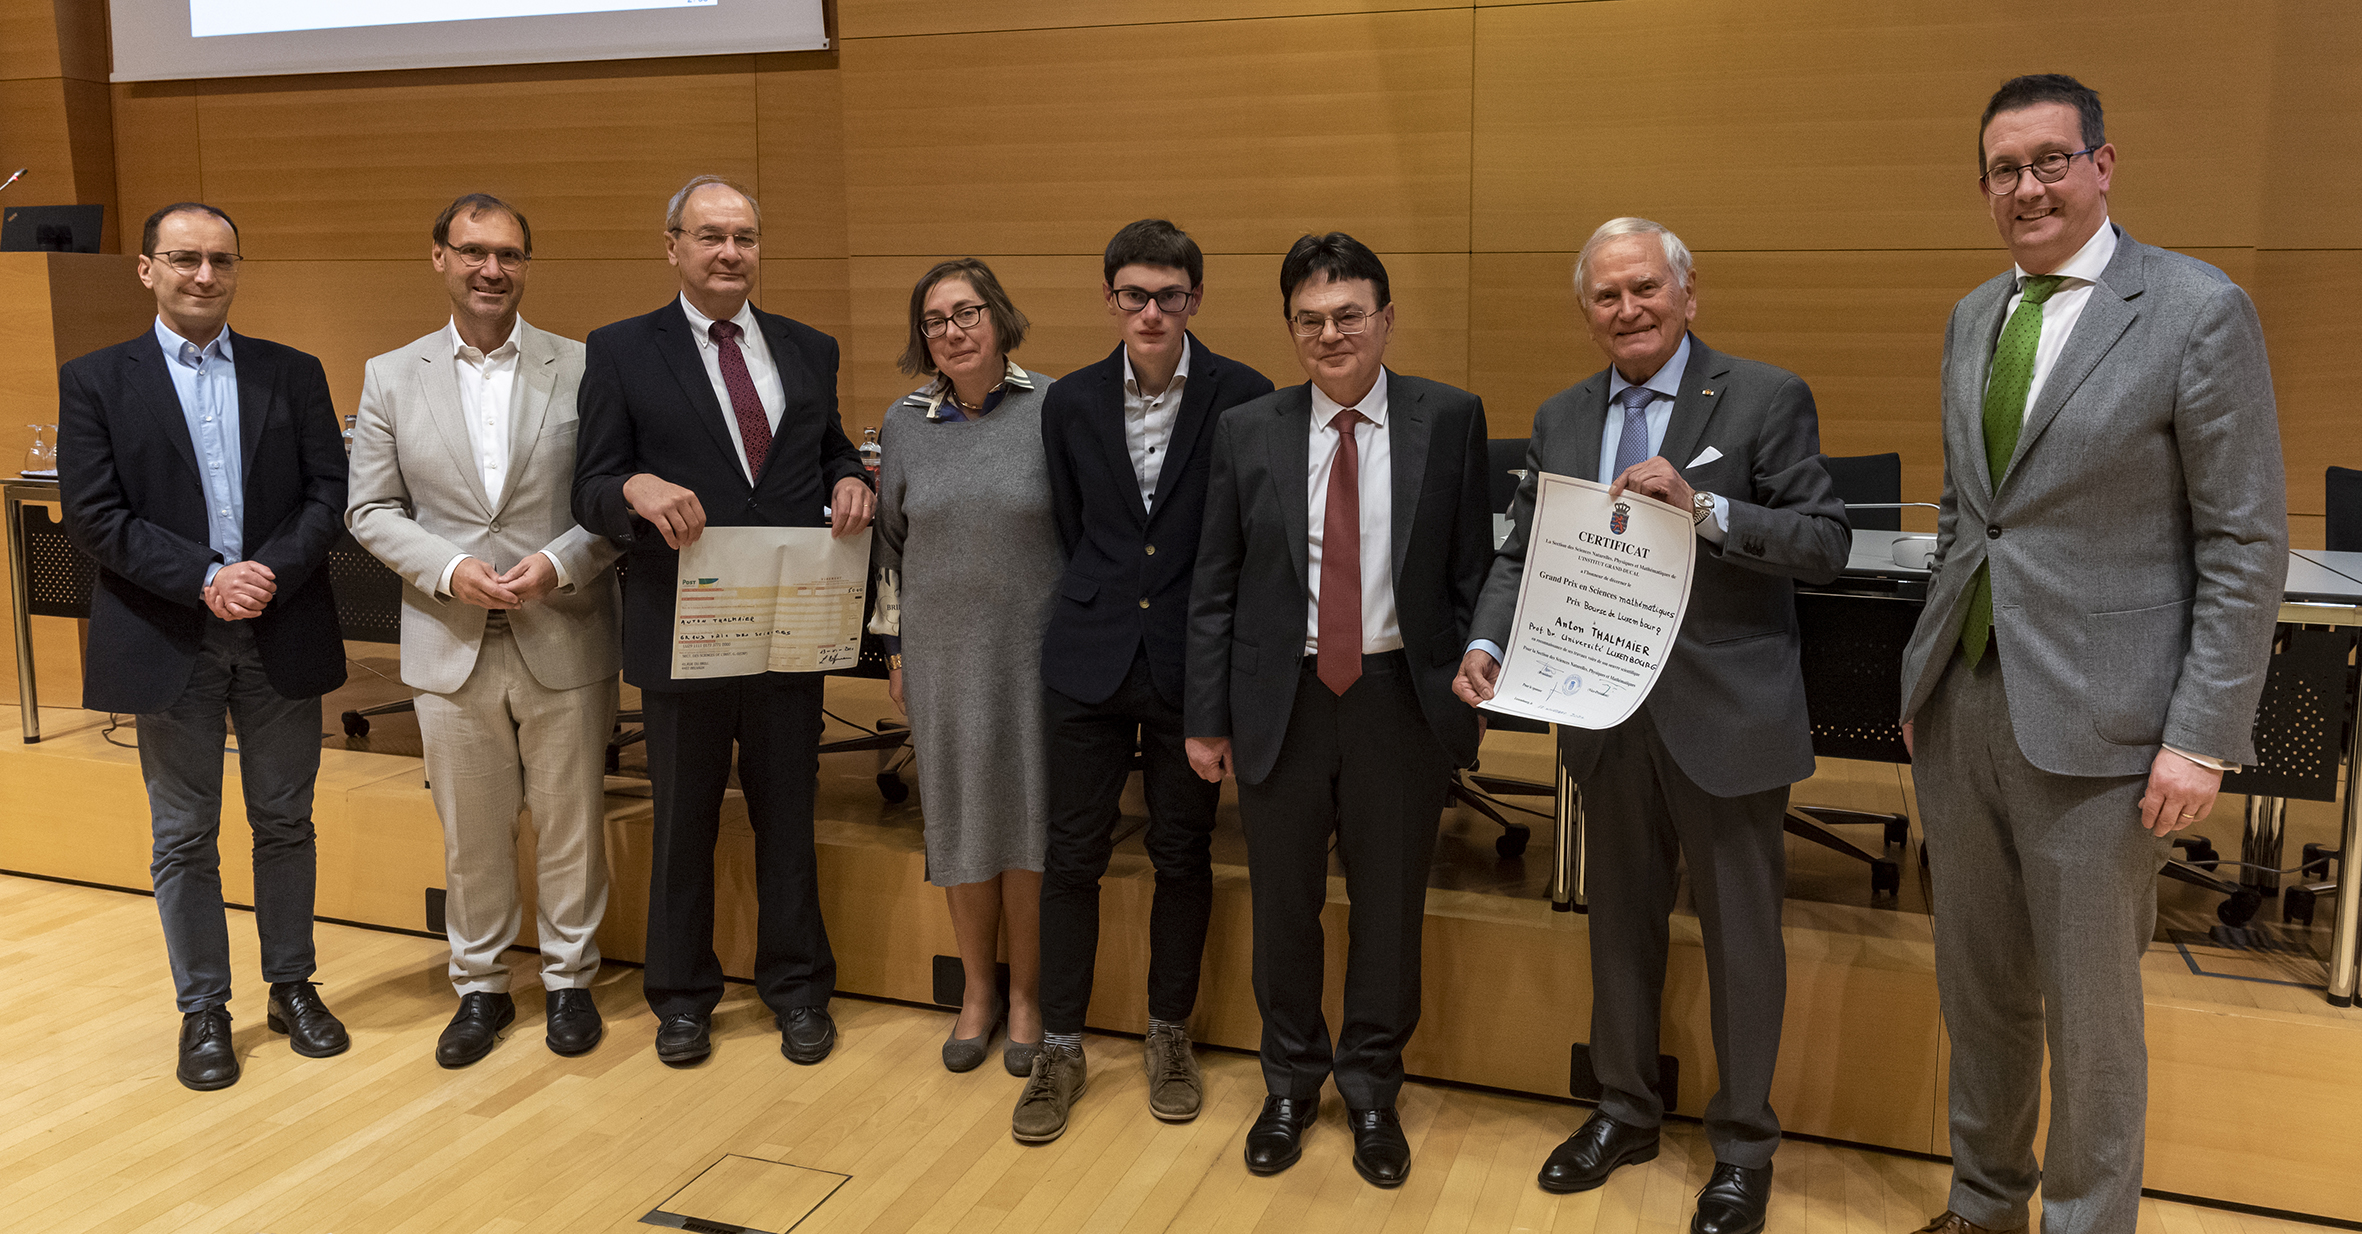 Grand Prix 2021 en sciences mathématiques de l’Institut grand-ducal / Prix de la Bourse de Luxembourg : Professeur Anton THALMAIER (Université du Luxembourg) / lauréat